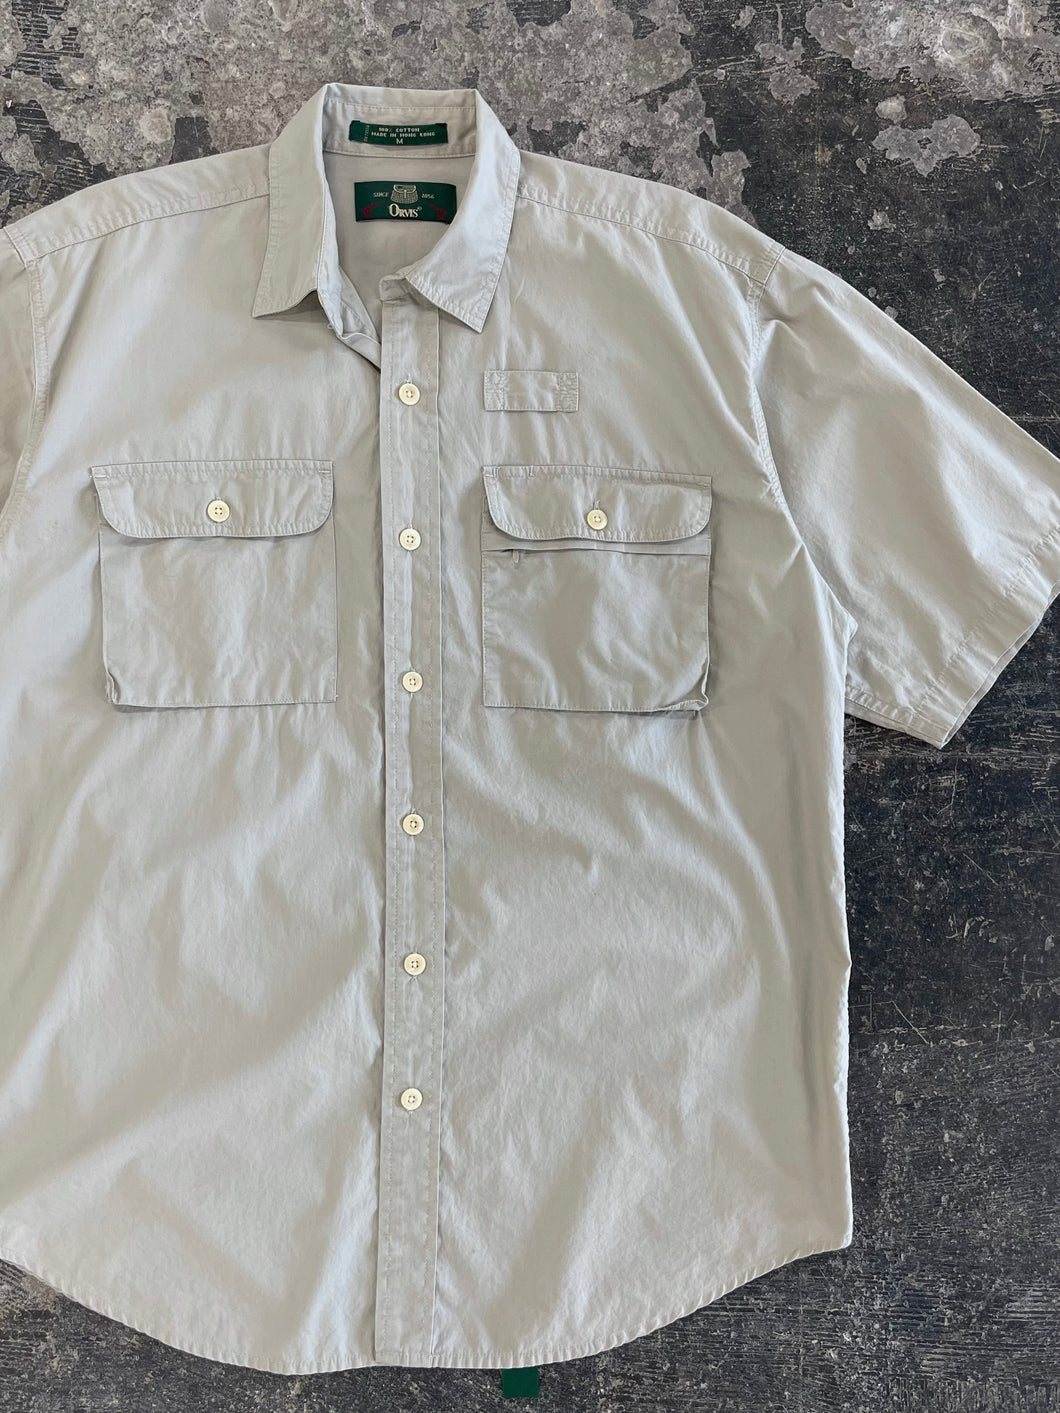 90s Khaki Short Sleeve Utility Shirt (M)